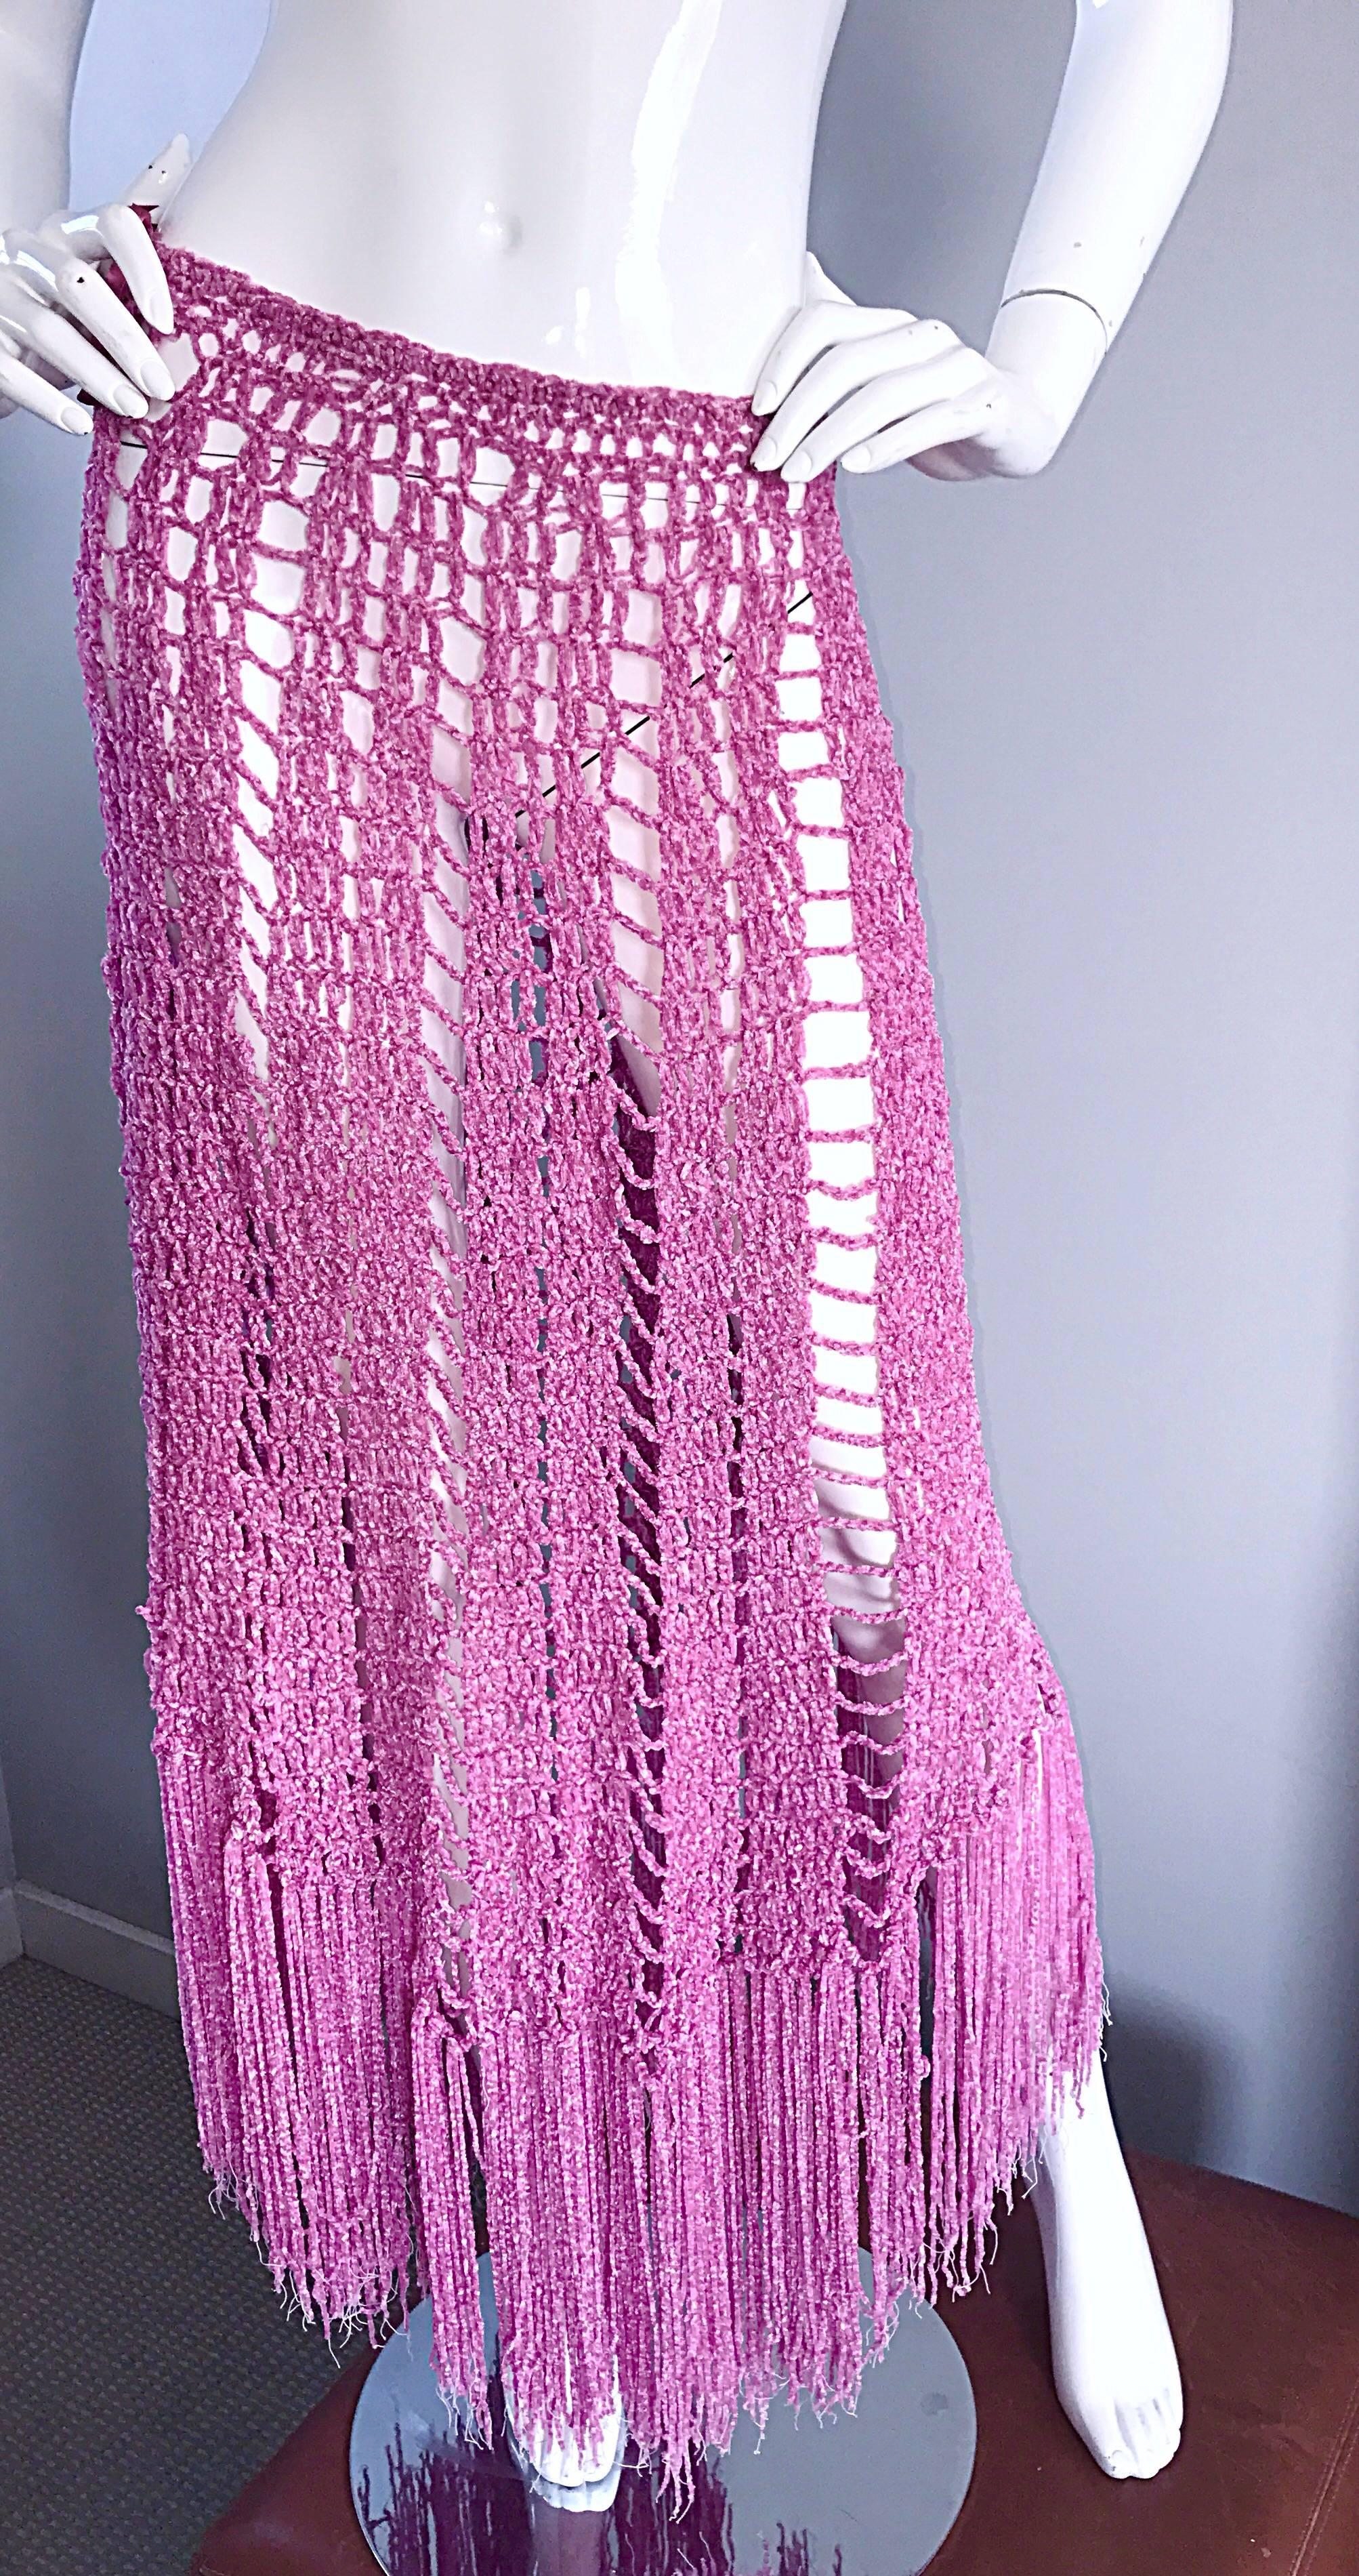 Joseph Magnin 1970s Brand New Pink Vintage Italian Crochet Skirt, Dress or Cape 1